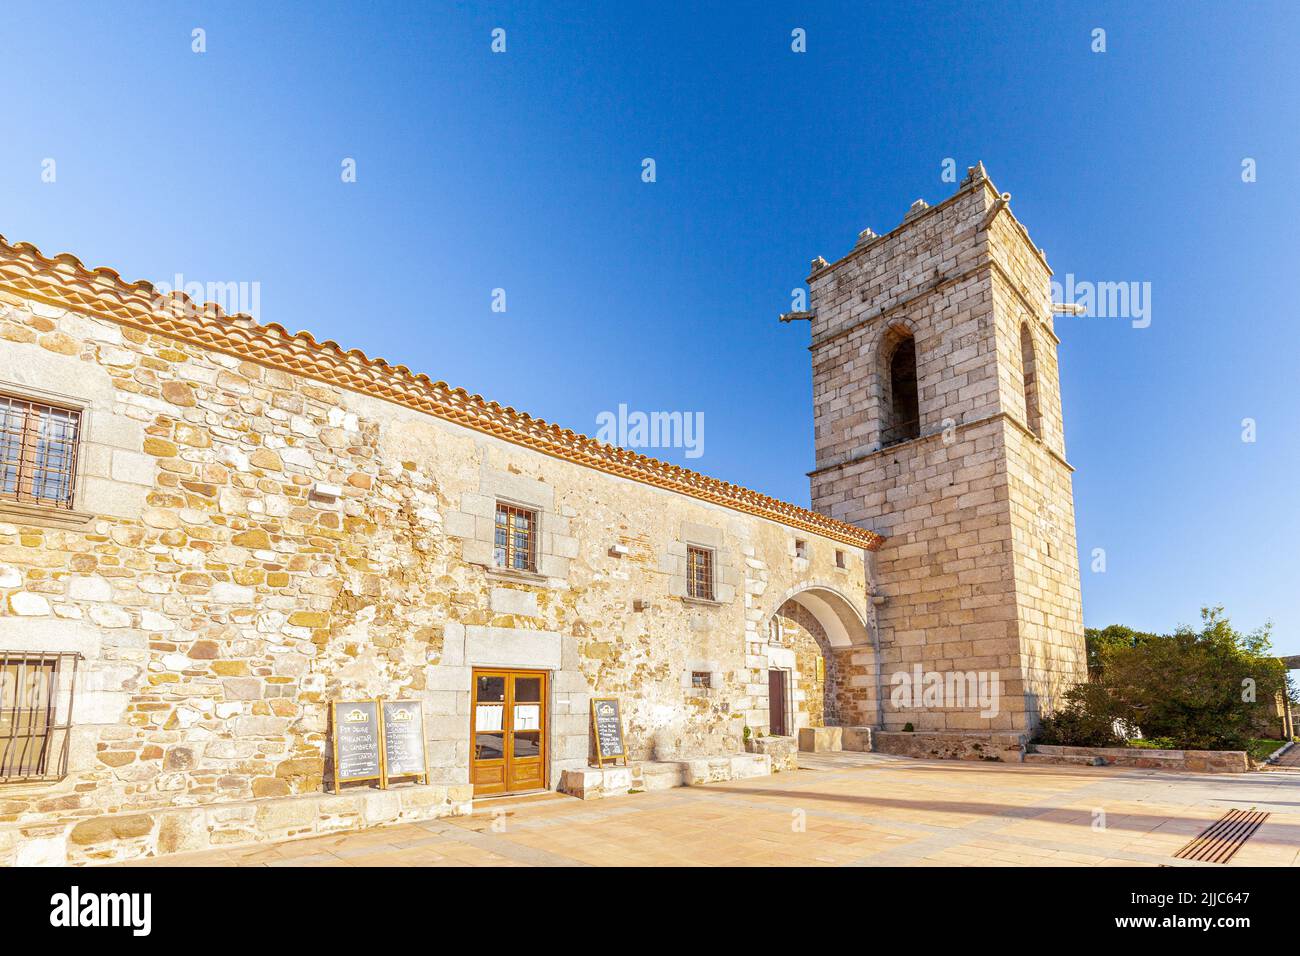 Santuari del Corredor - Corredor Church, Parc Natural El Montnegre i el Corredor, Barcelona, Spain Stock Photo